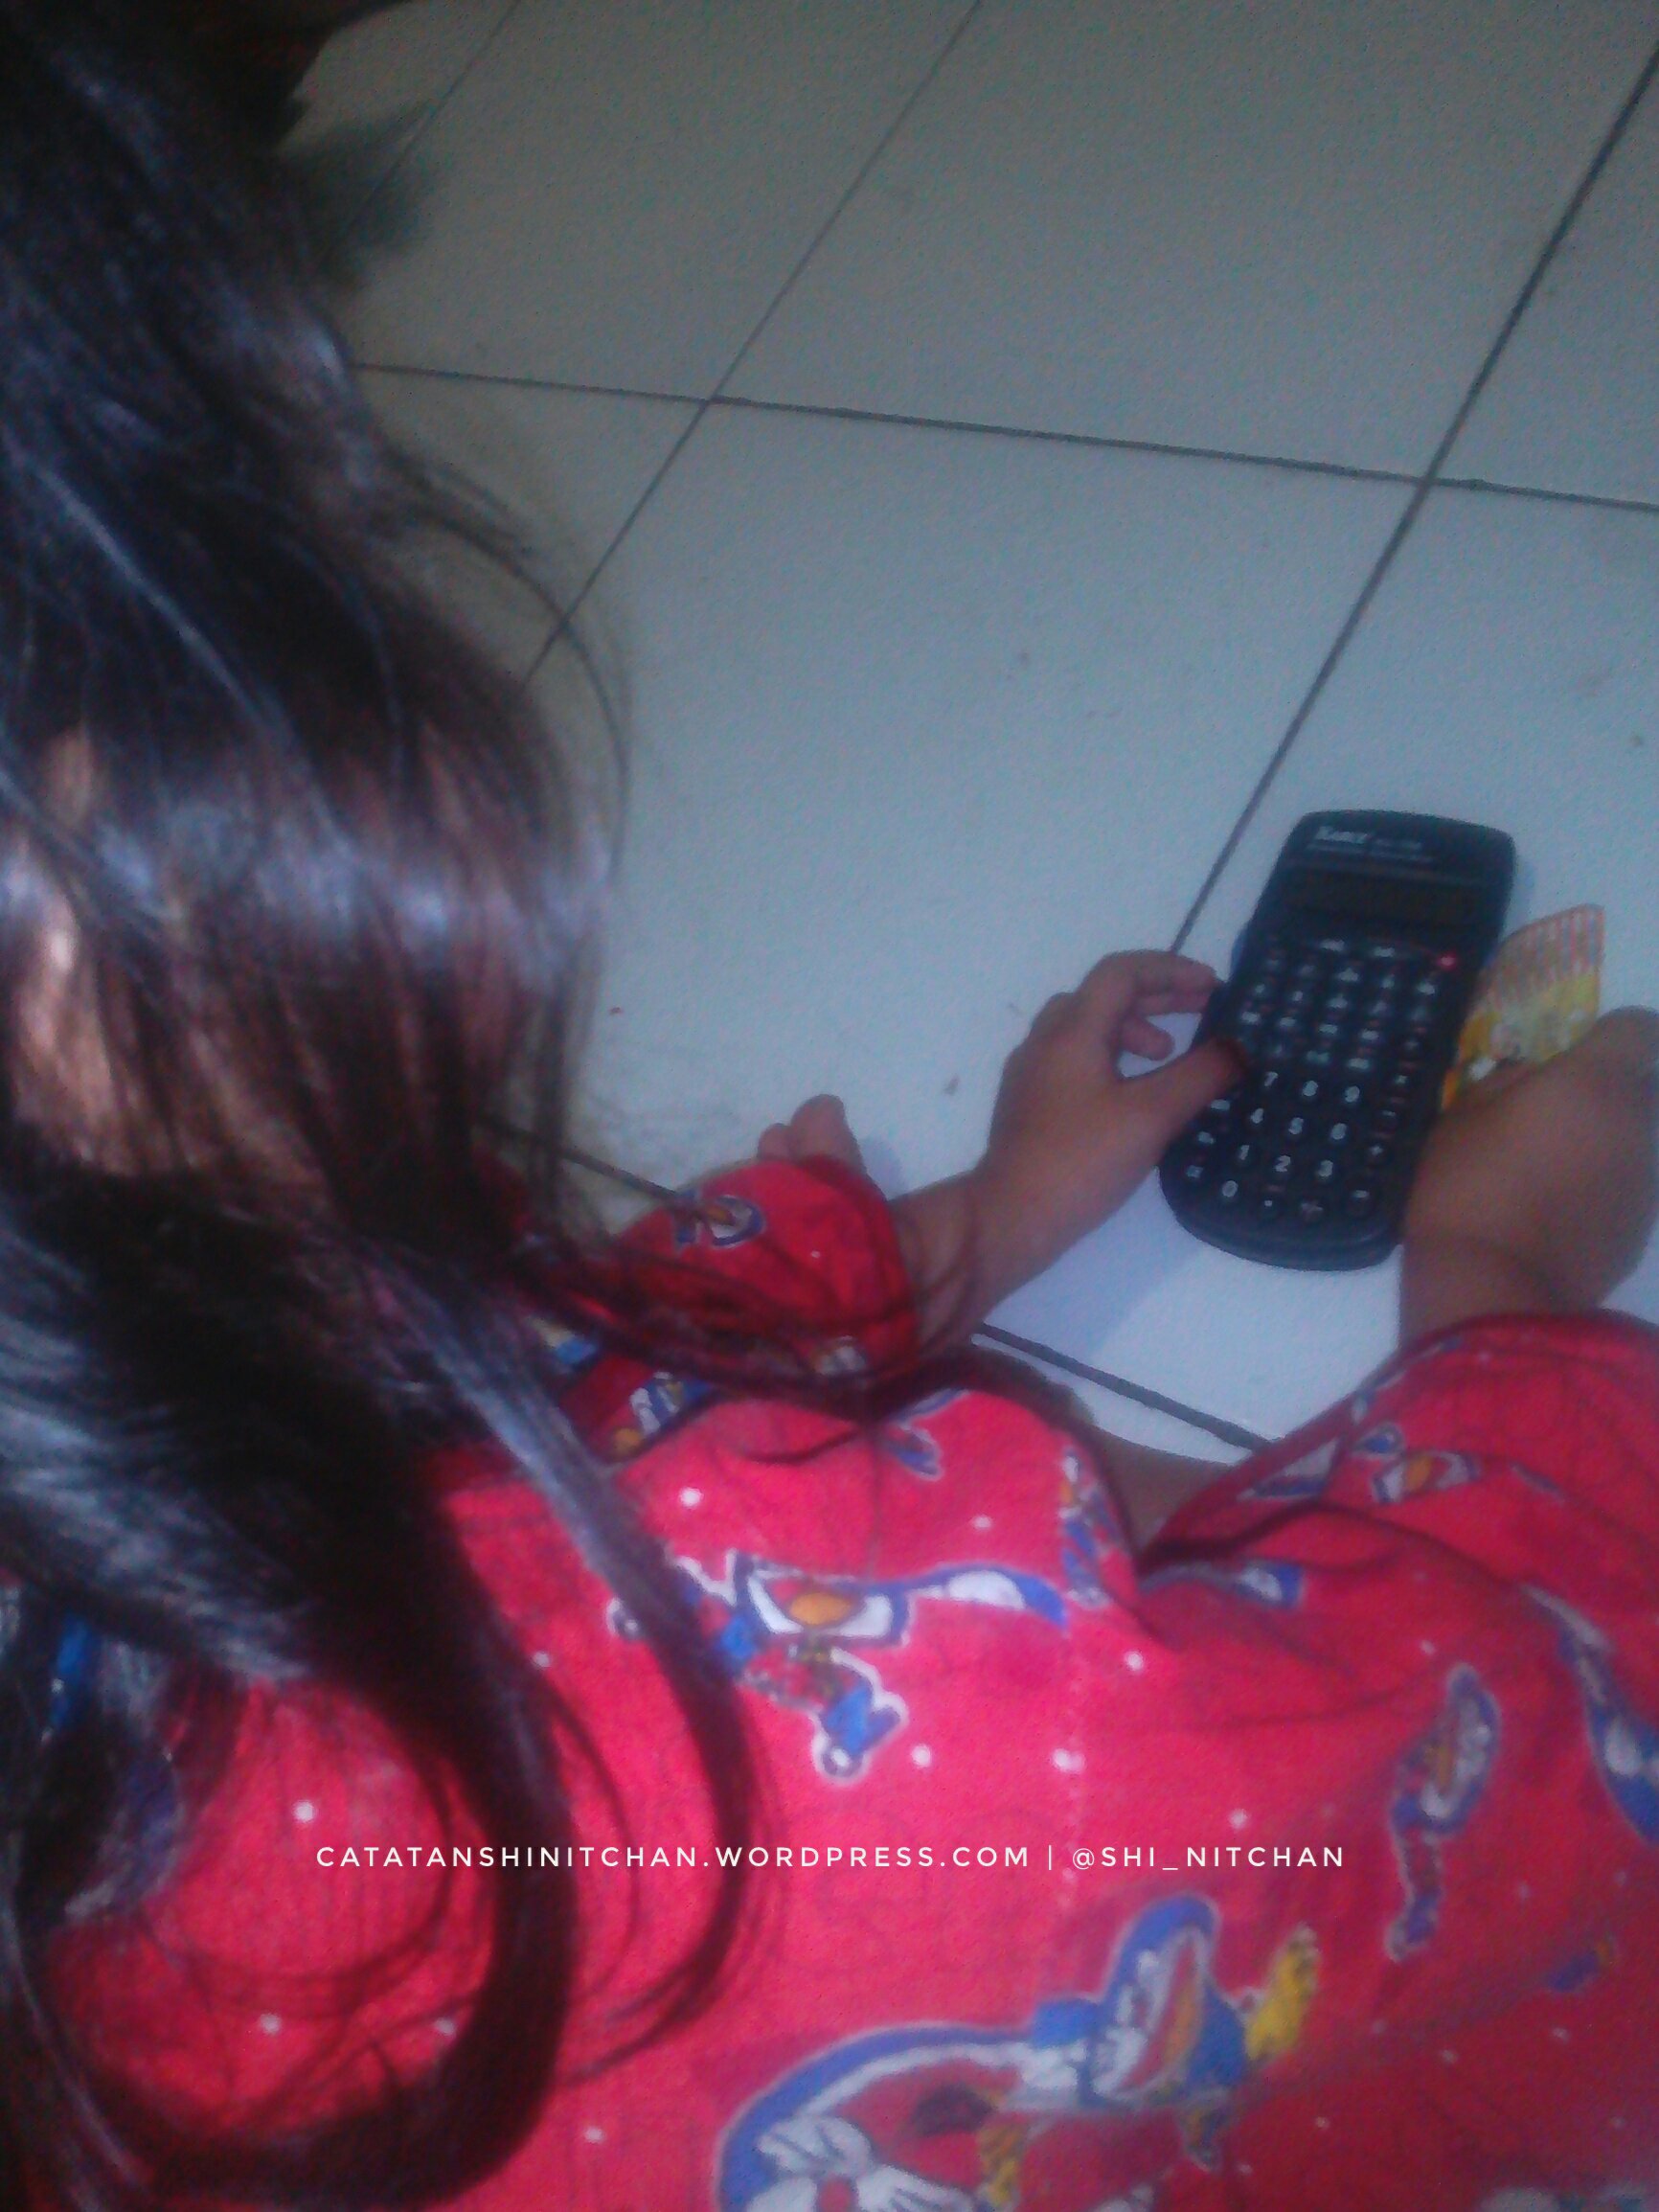 Najma mulai mencoba memijit digit kalkulator “empat tambah tiga sama dengan tujuh mi lihat hasilnya tujuh” katanya